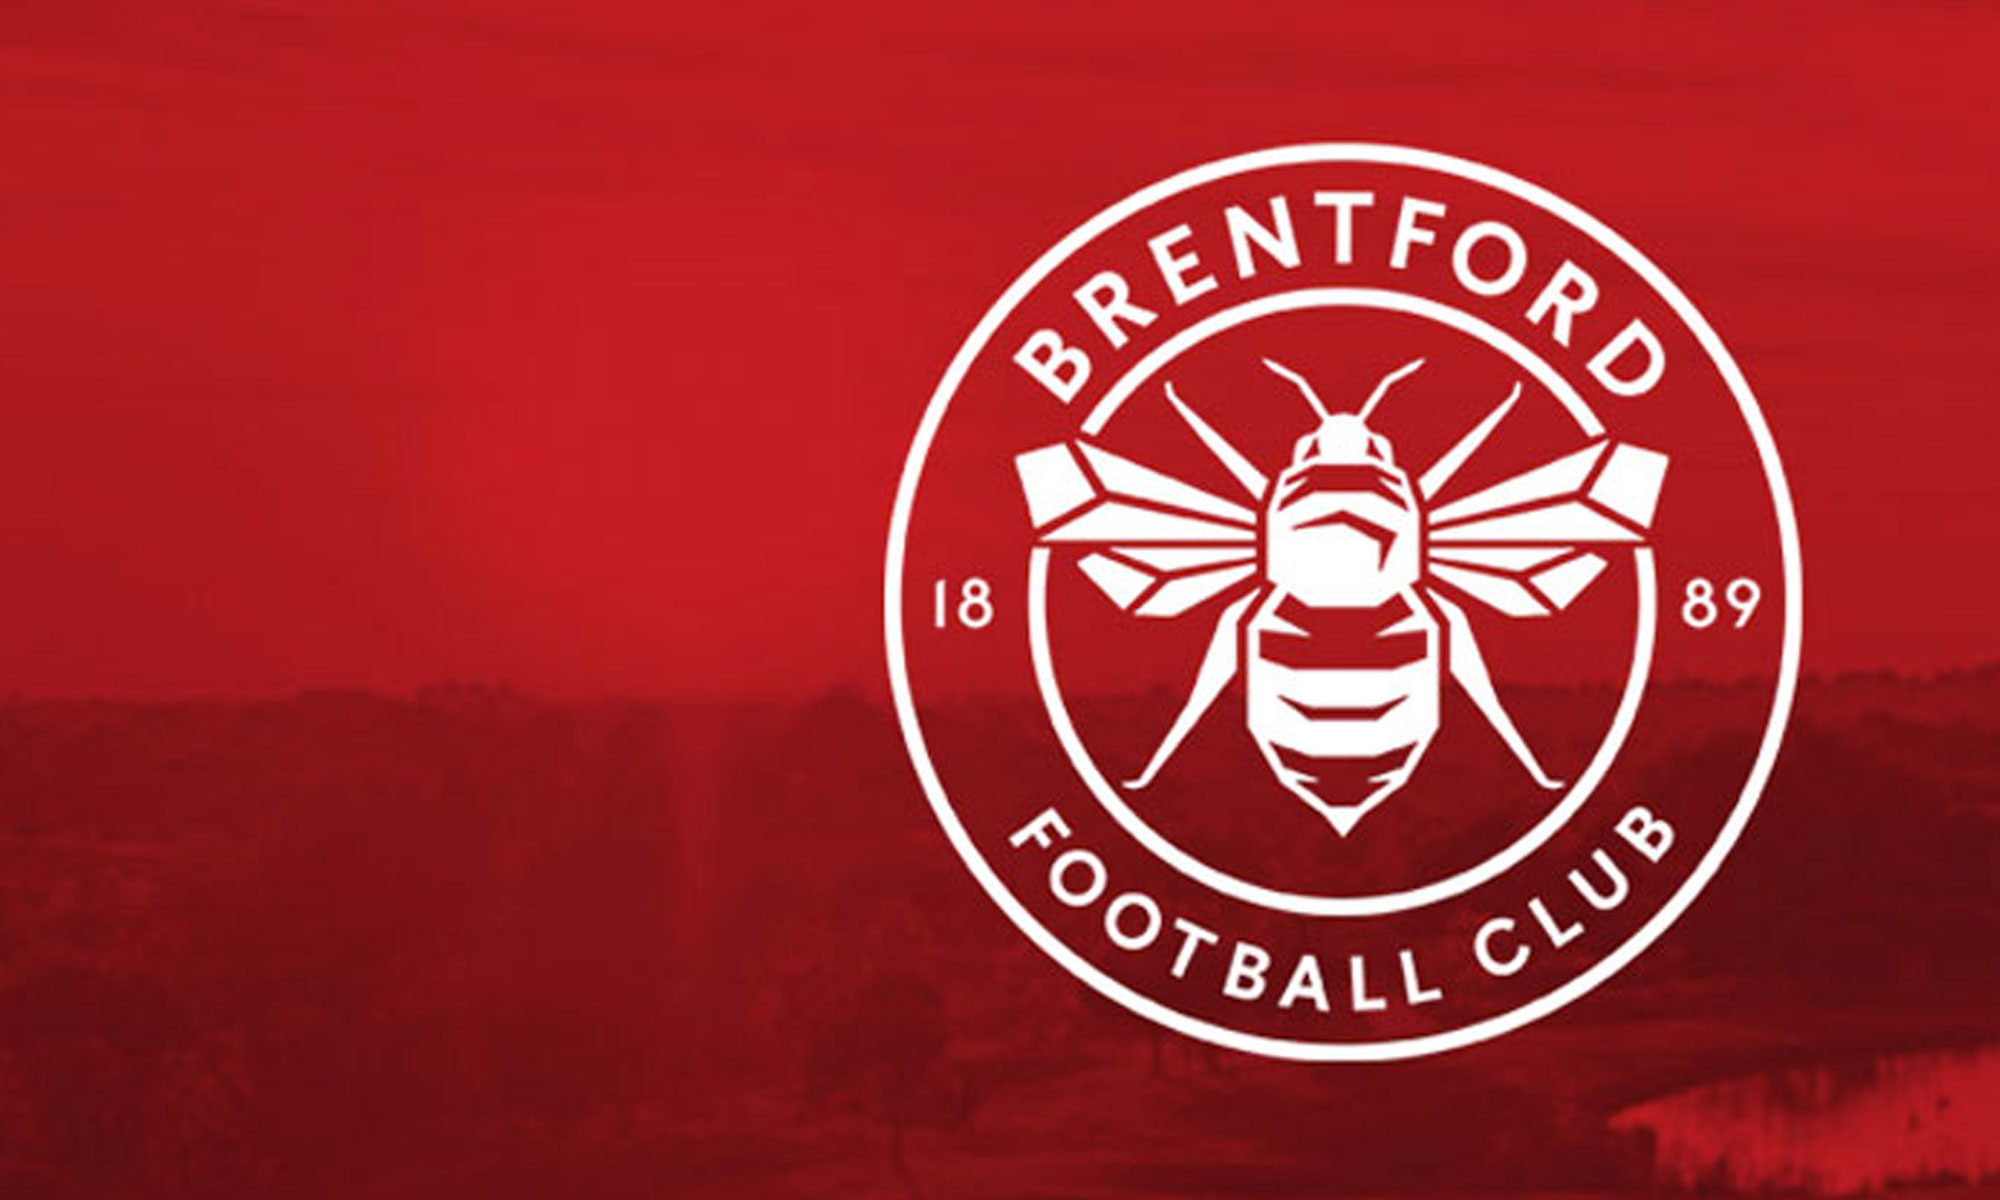 Câu lạc bộ bóng đá Brentford – Lịch sử, Thành tích và Các cầu thủ tiêu biểu